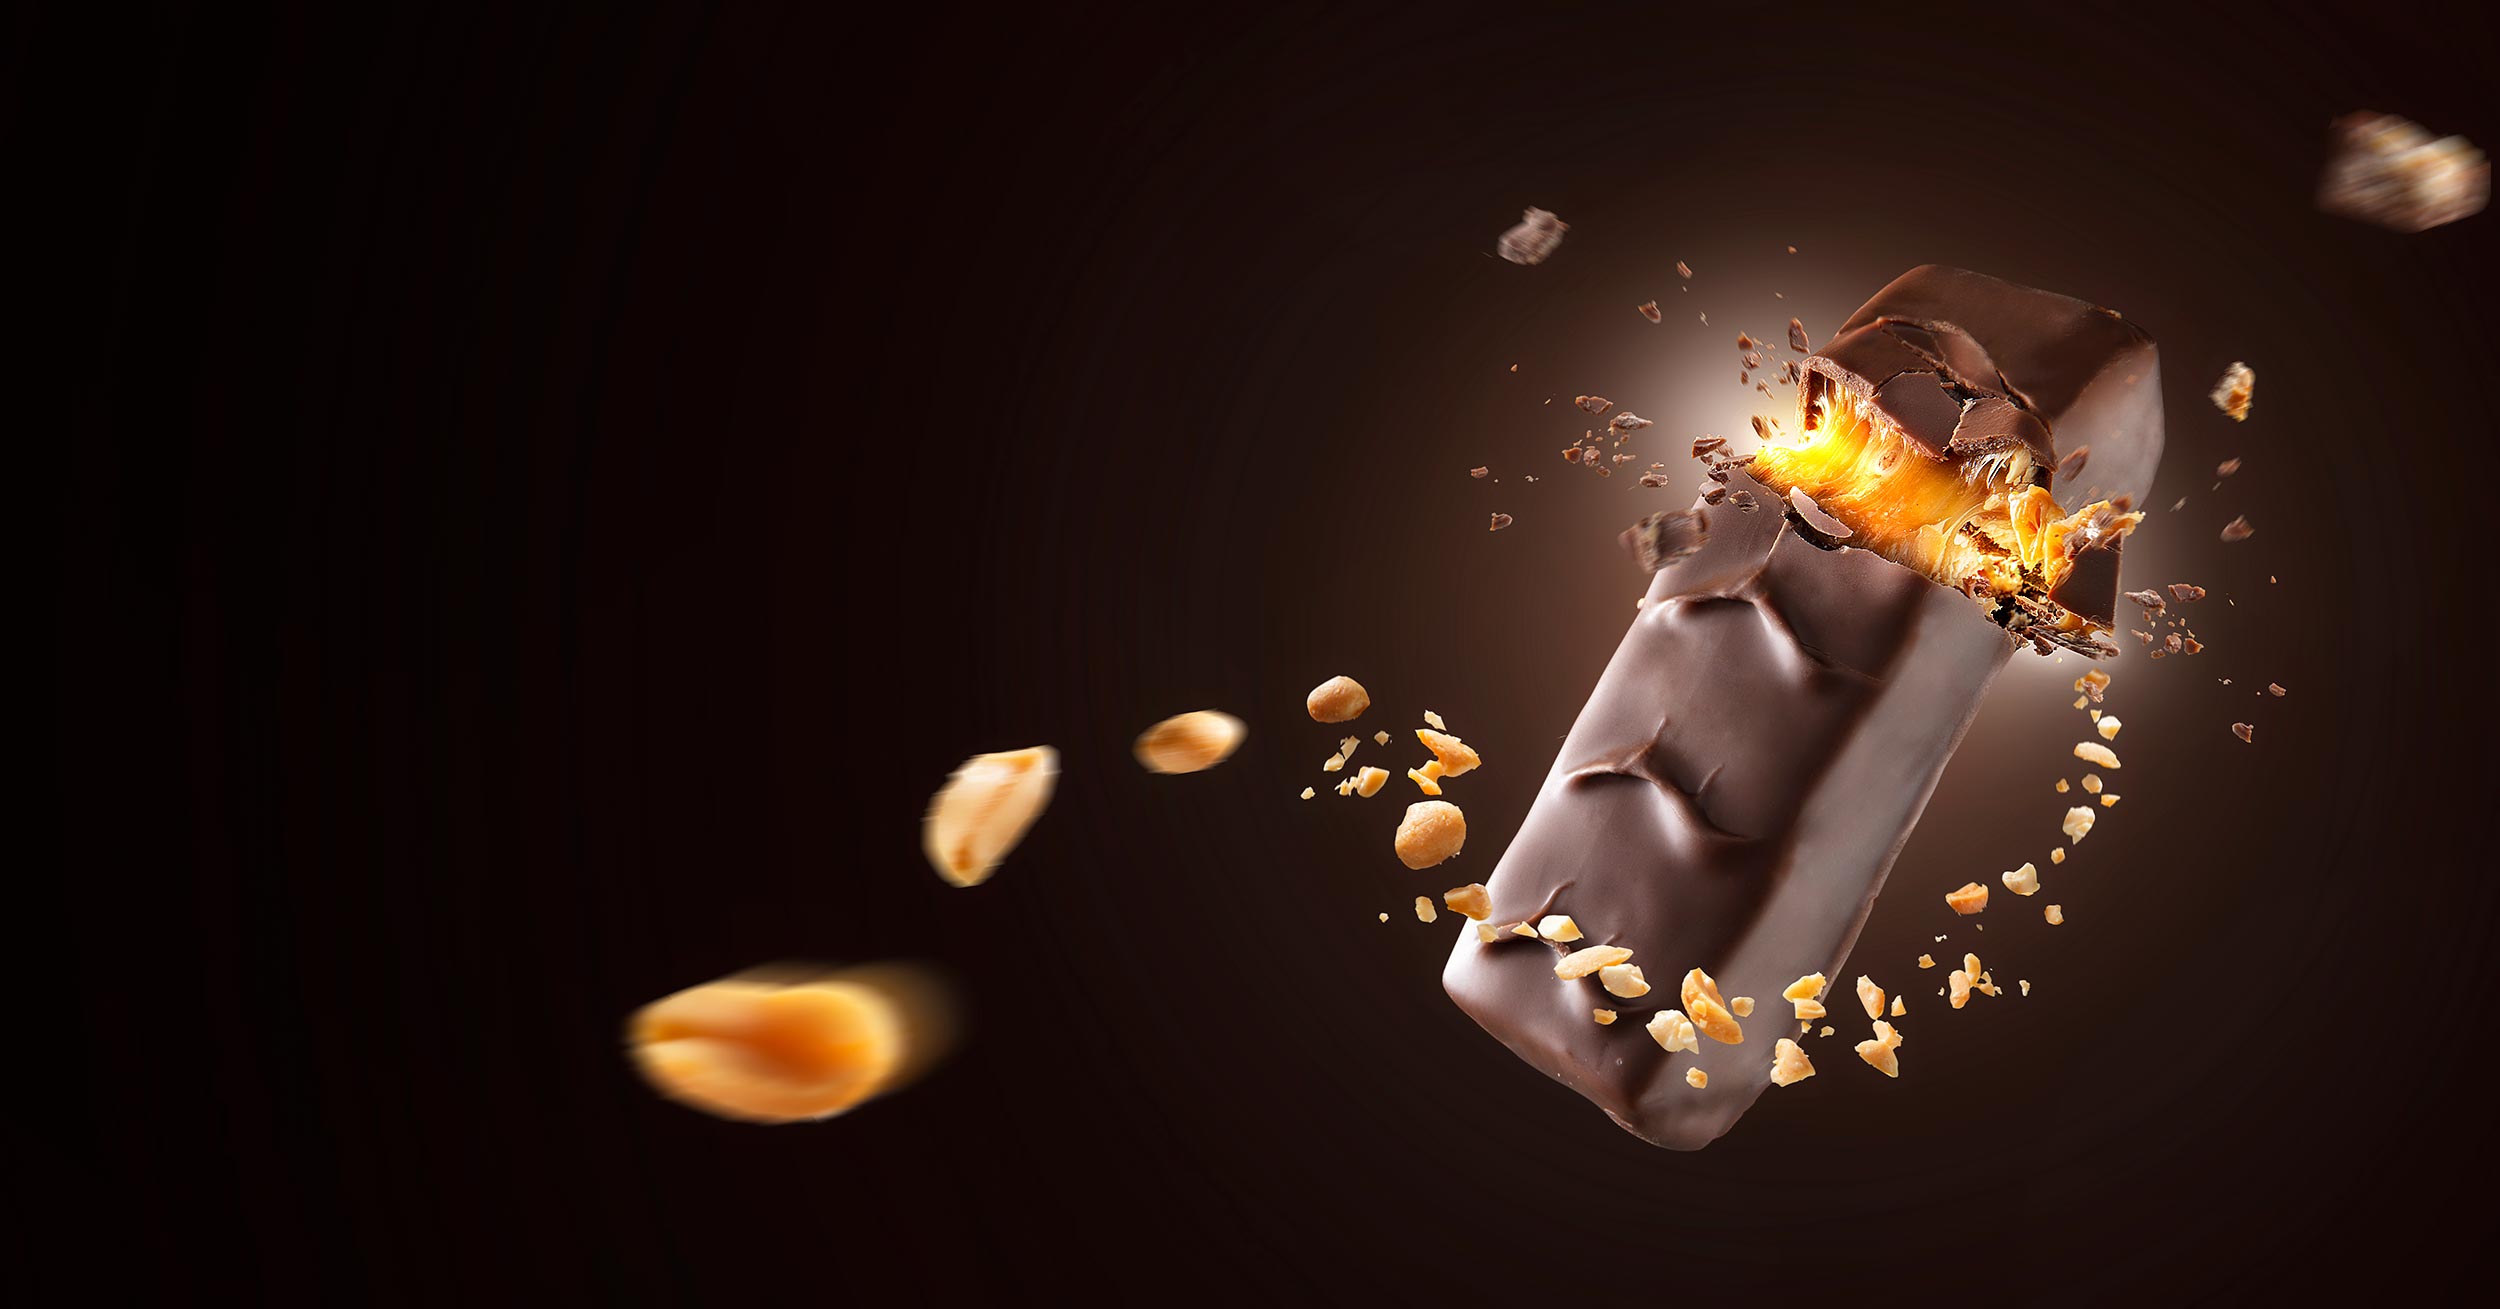 Produktfotograf - Inszenierung eines Snickers in einem aufwendigen Produktfoto